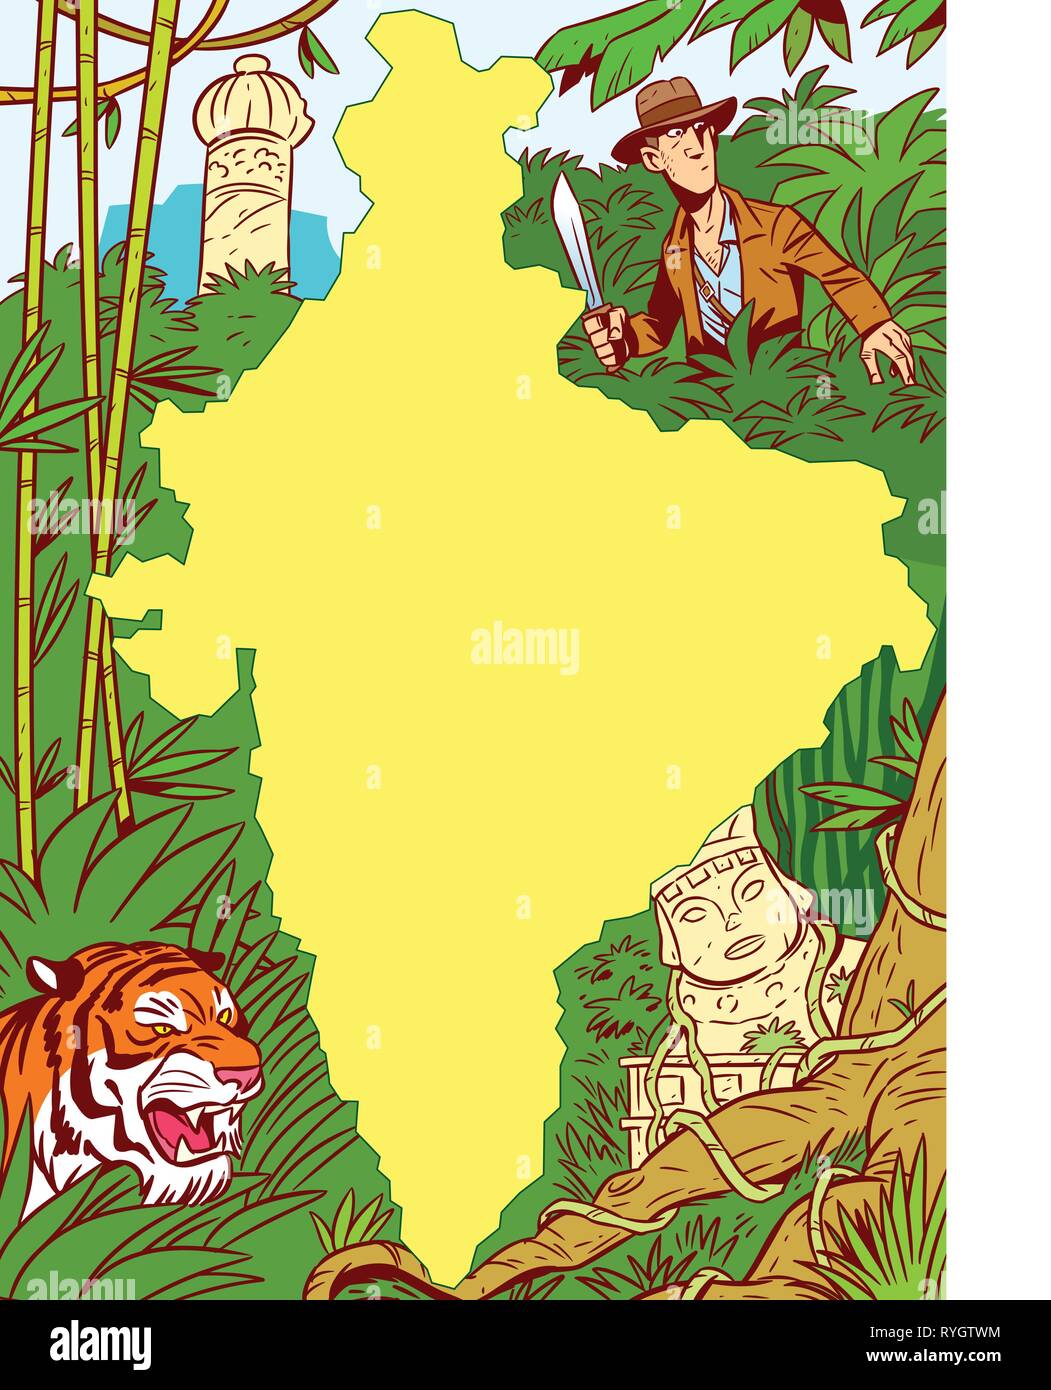 L'illustration montre le continent africain au milieu de la jungle, les ruines antiques, animaux prédateurs et un homme blanc avec une machette. Illustration faite avec Illustration de Vecteur